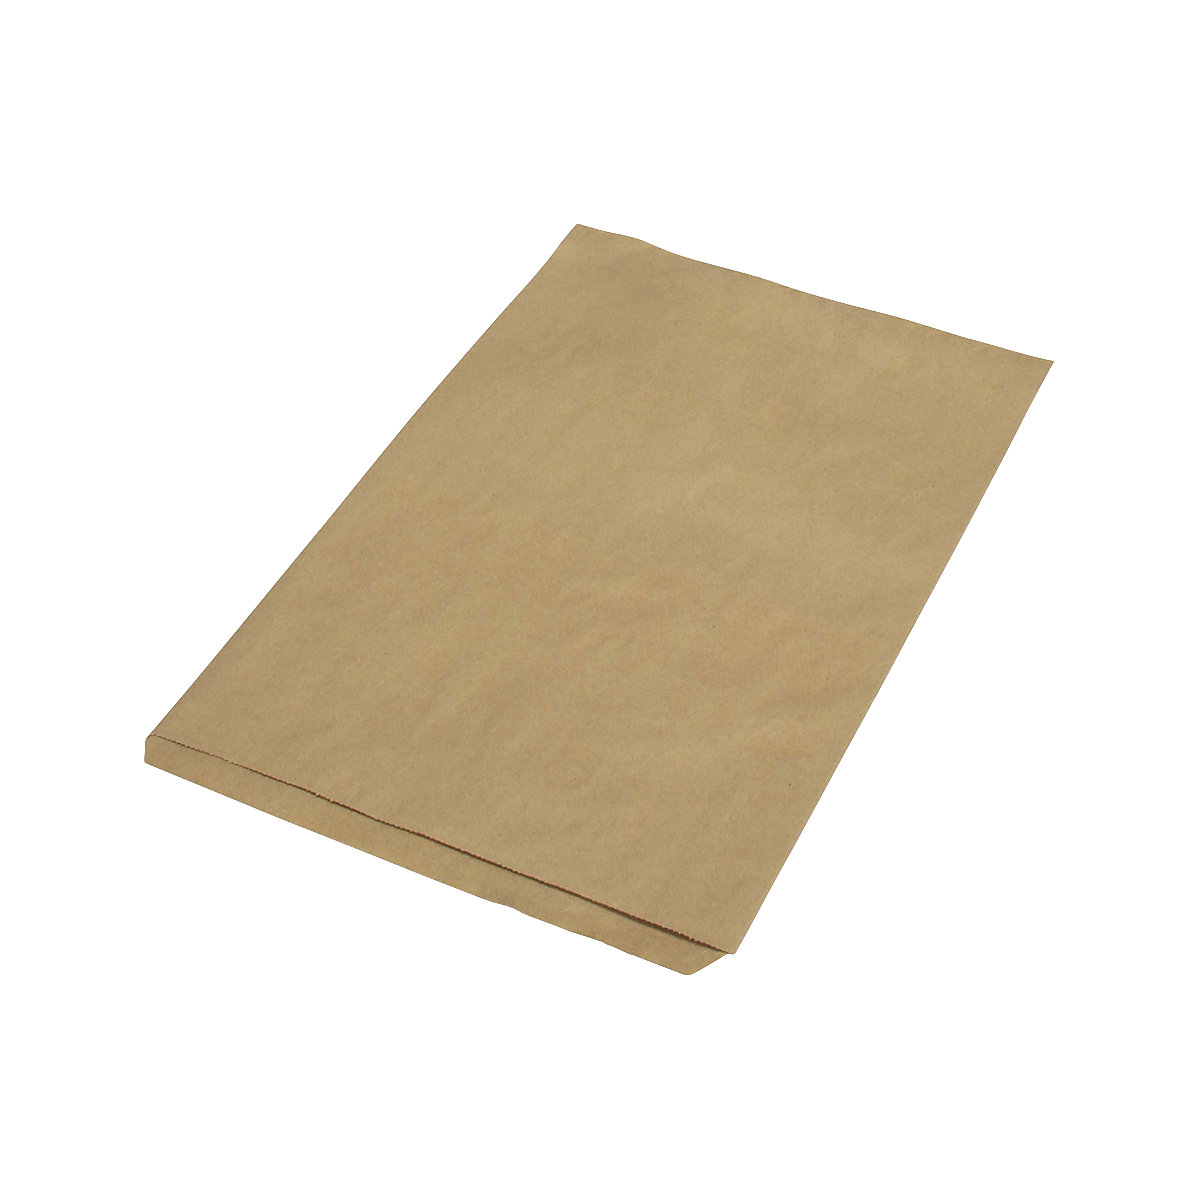 Sacchetti piatti – terra, in carta riciclata, lungh. x largh. 350 x 230 mm, conf. da 1000 pz., a partire da 10 conf.-1